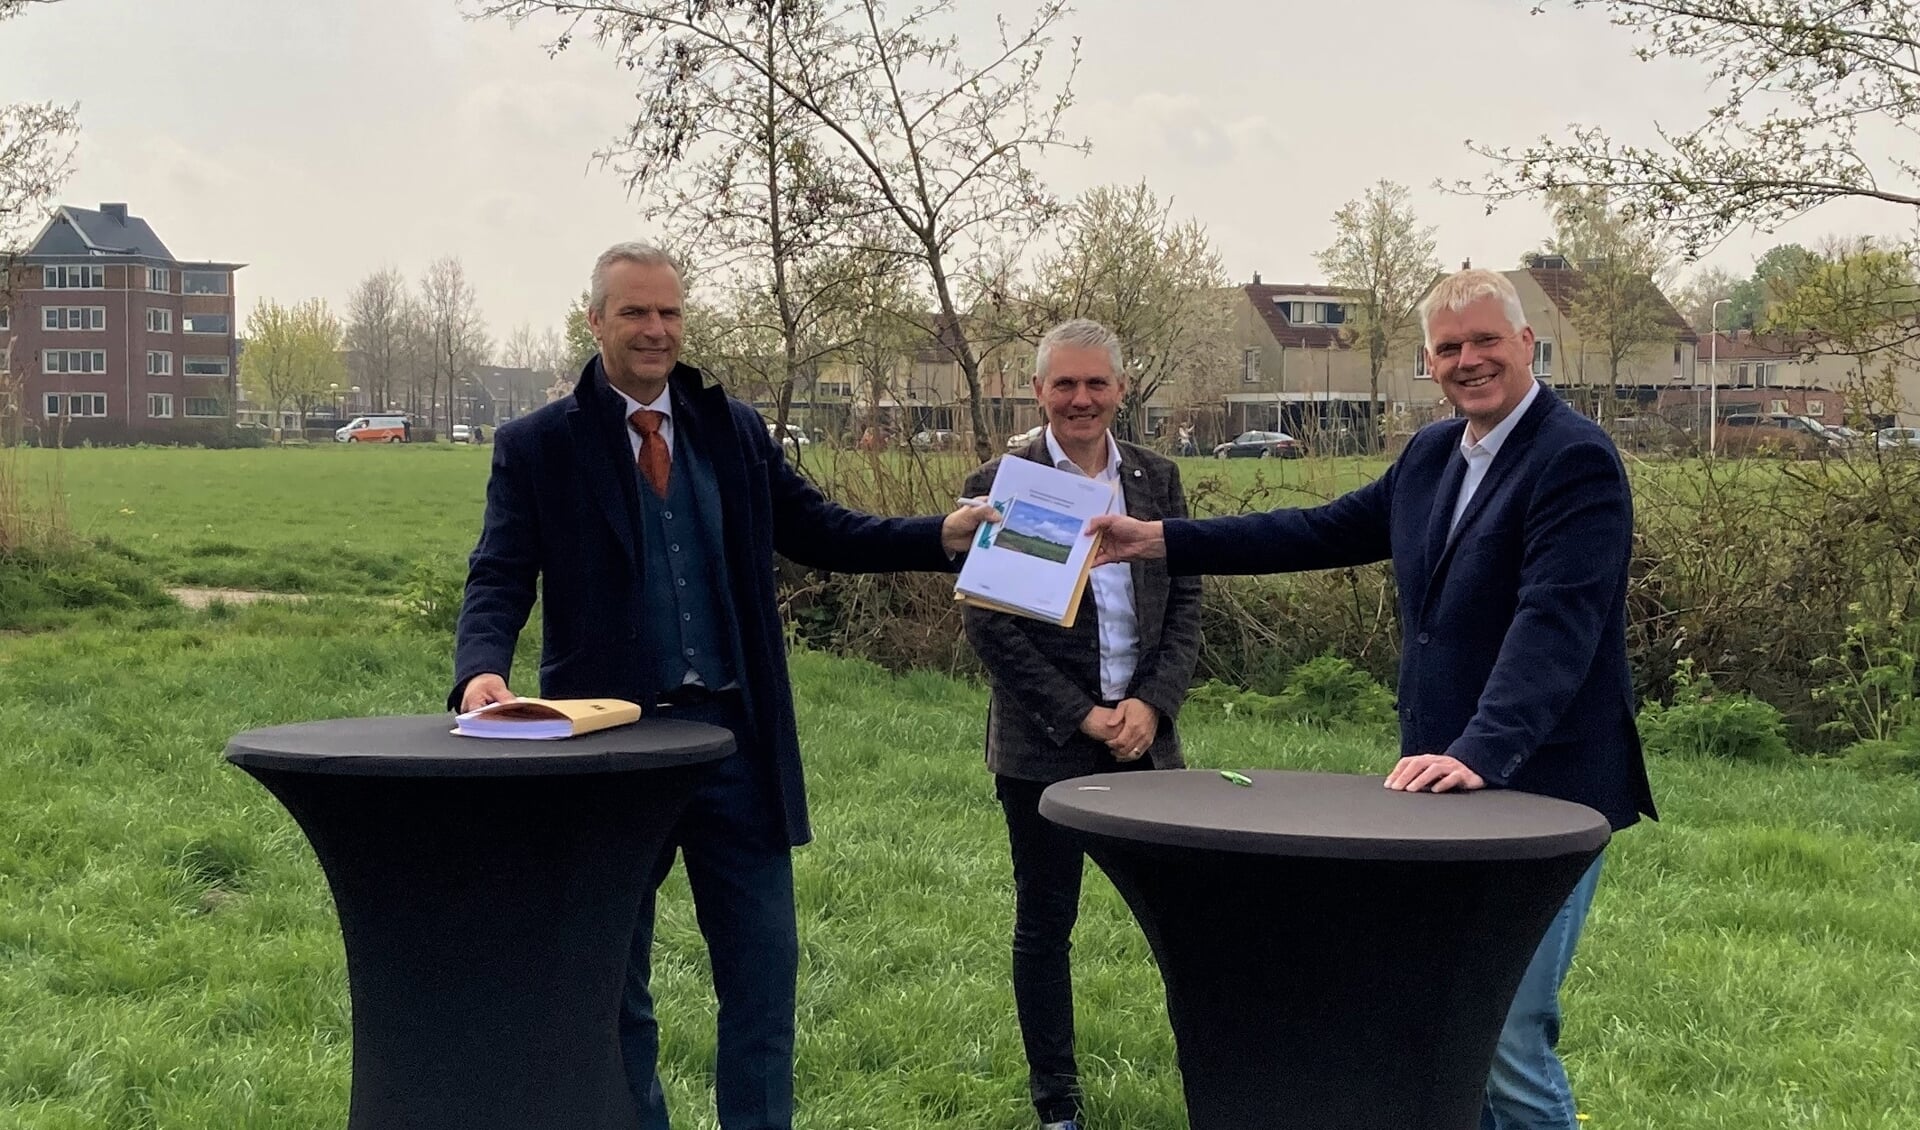 Wethouder Wim Vos, Ard de Jong (Latei) en Jan van Barneveld (Alliantie Ontwikkeling) zetten ruim een jaar geleden hun handtekening onder een overeenkomst voor de ontwikkeling van Mastenbroek II in Achterveld.